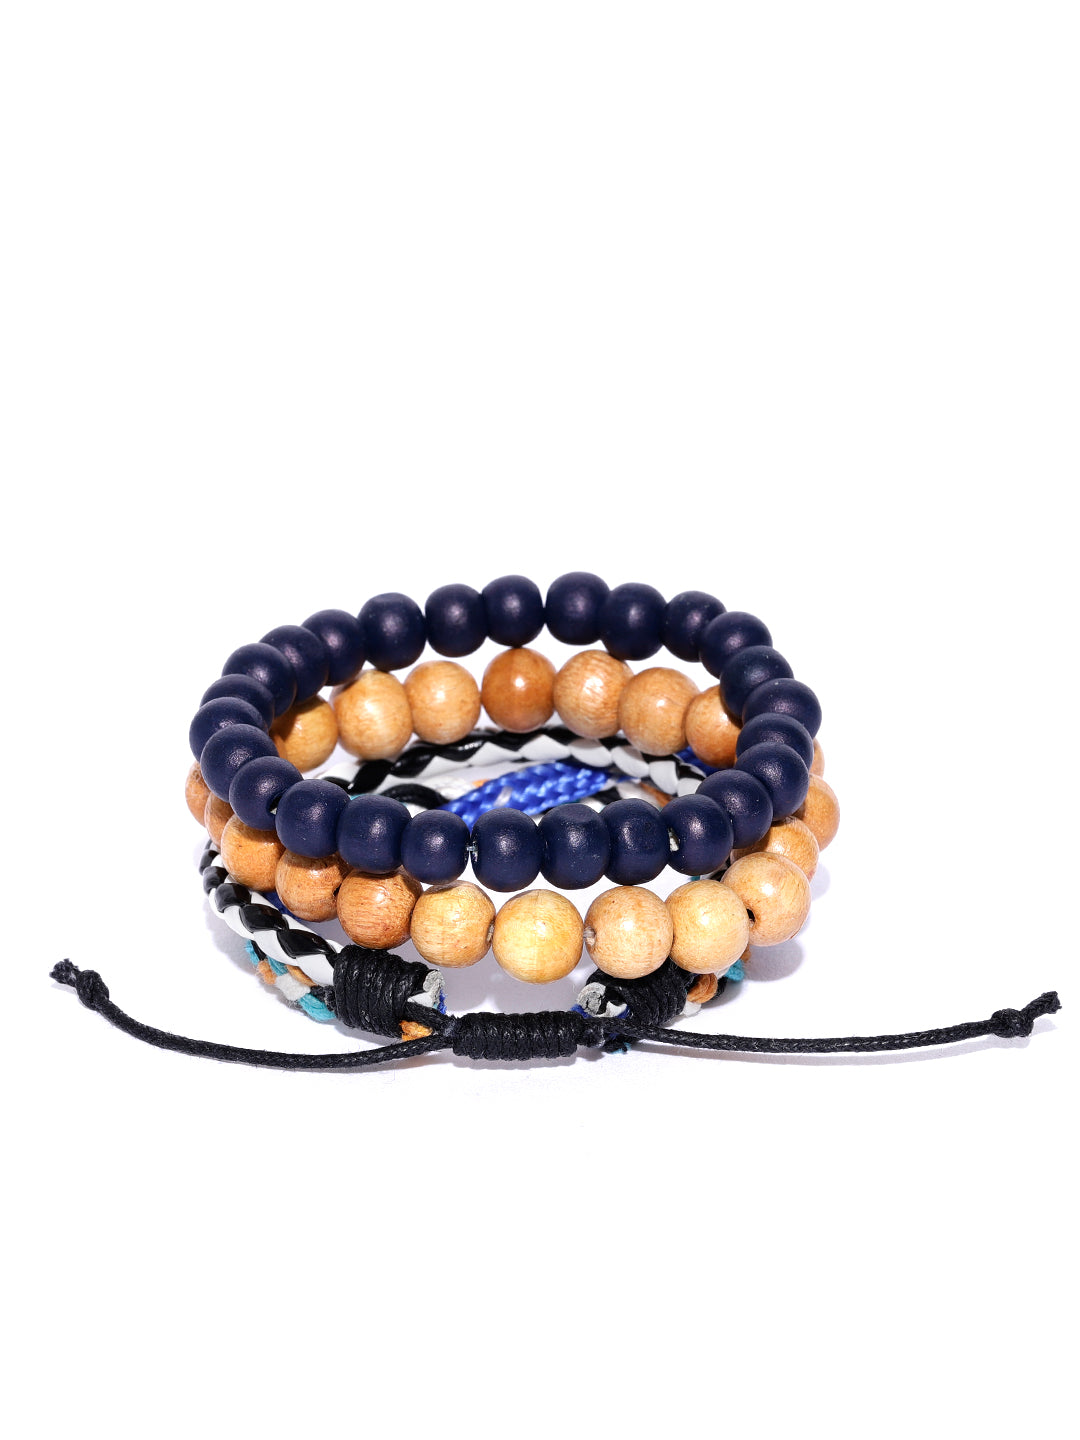 Panda Beaded Bracelet, Black Lava Rock Beads, White Howlite Beads, Stretch  Bracelet, Handmade, New - Etsy